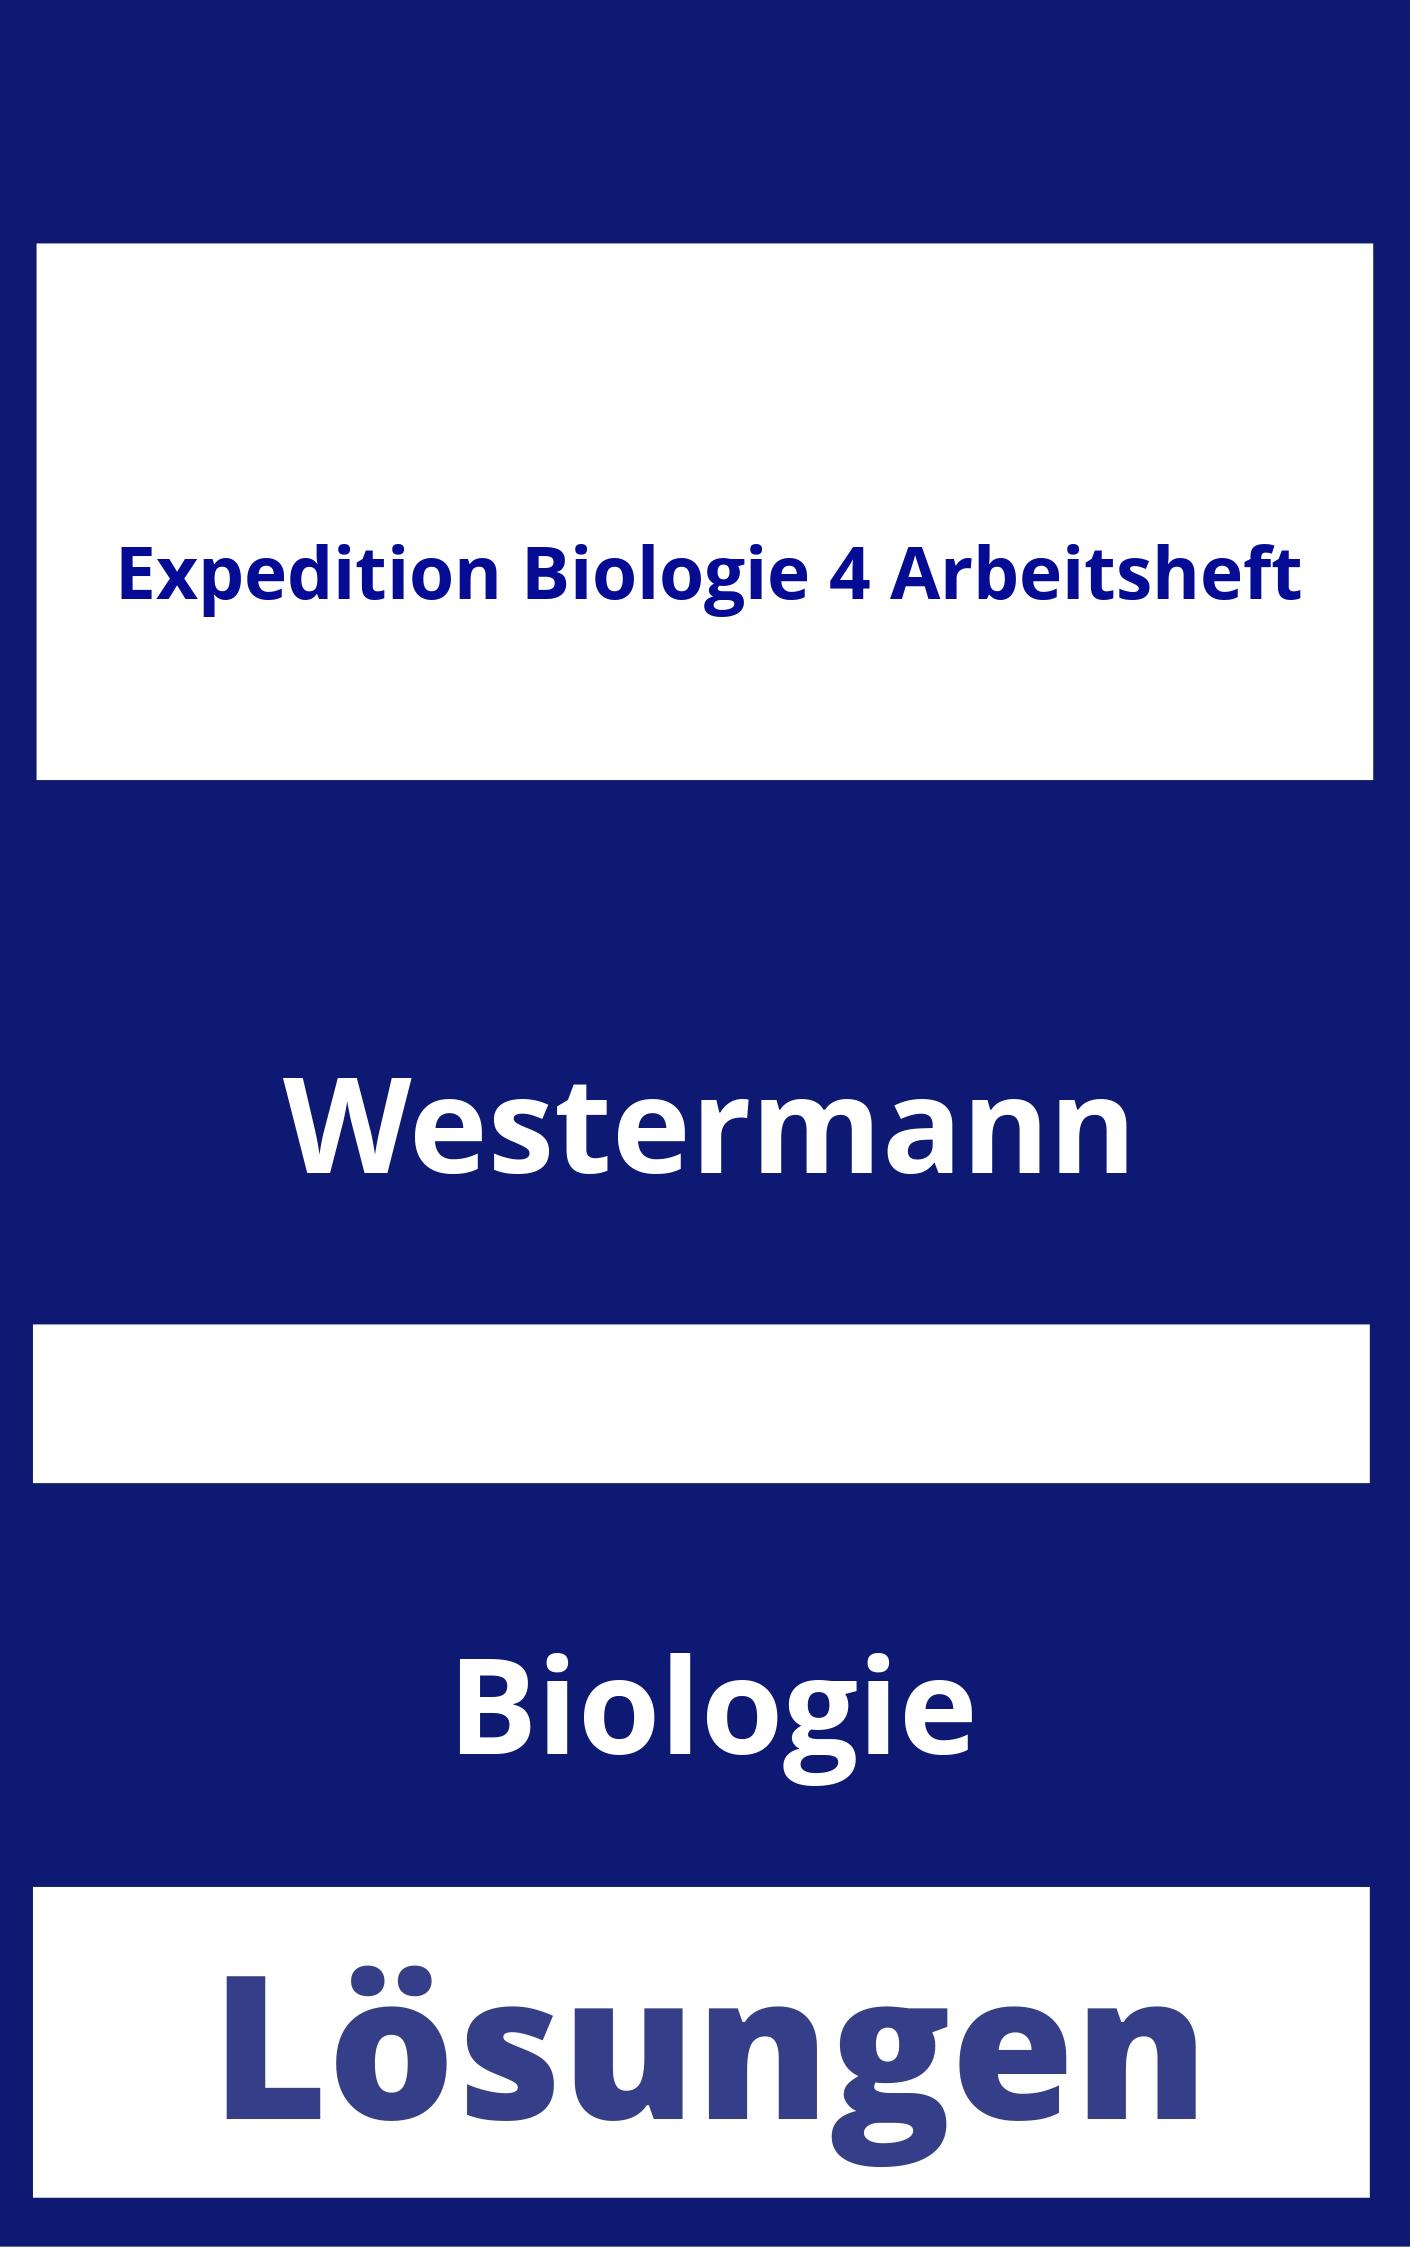 Expedition Biologie 4 Arbeitsheft Lösungen PDF